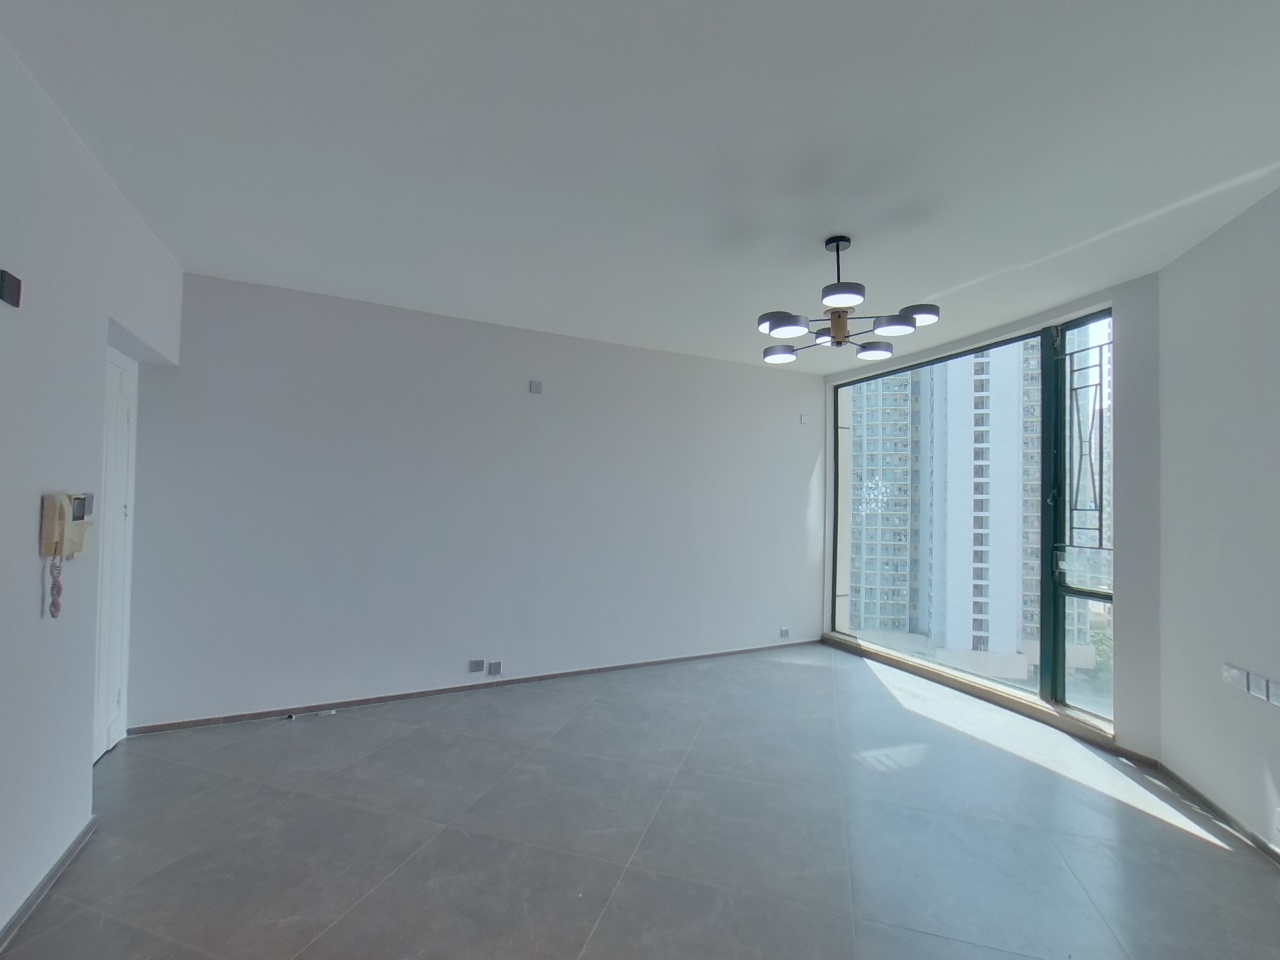 VILLA ESPLANADA Phase 1 - Block 1 Medium Floor Zone Flat F Tsing Yi